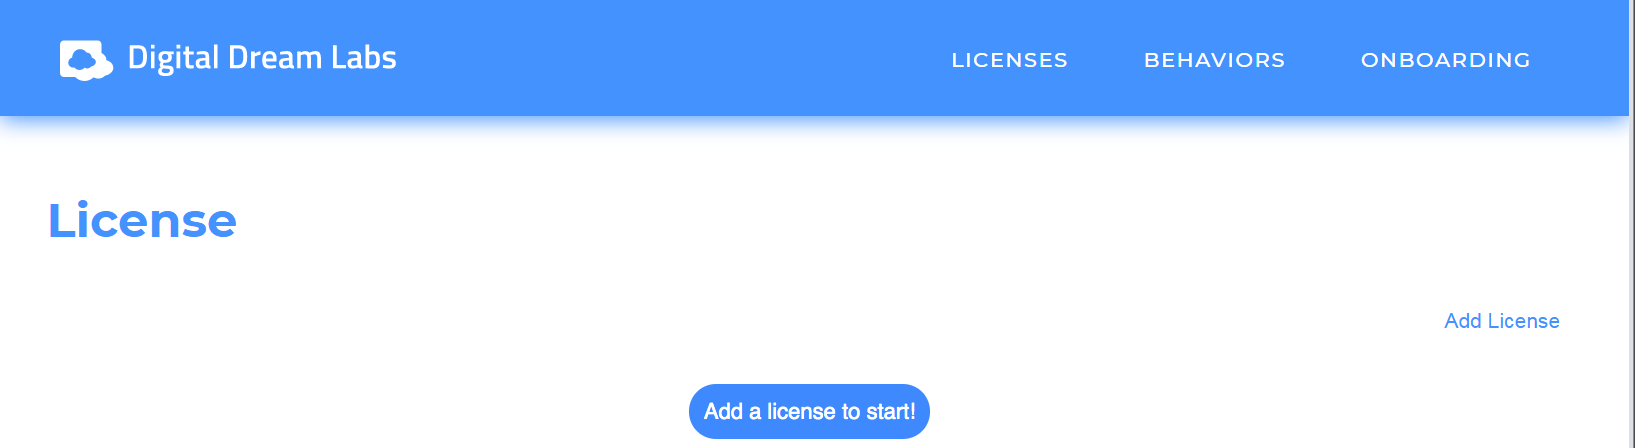 Add license